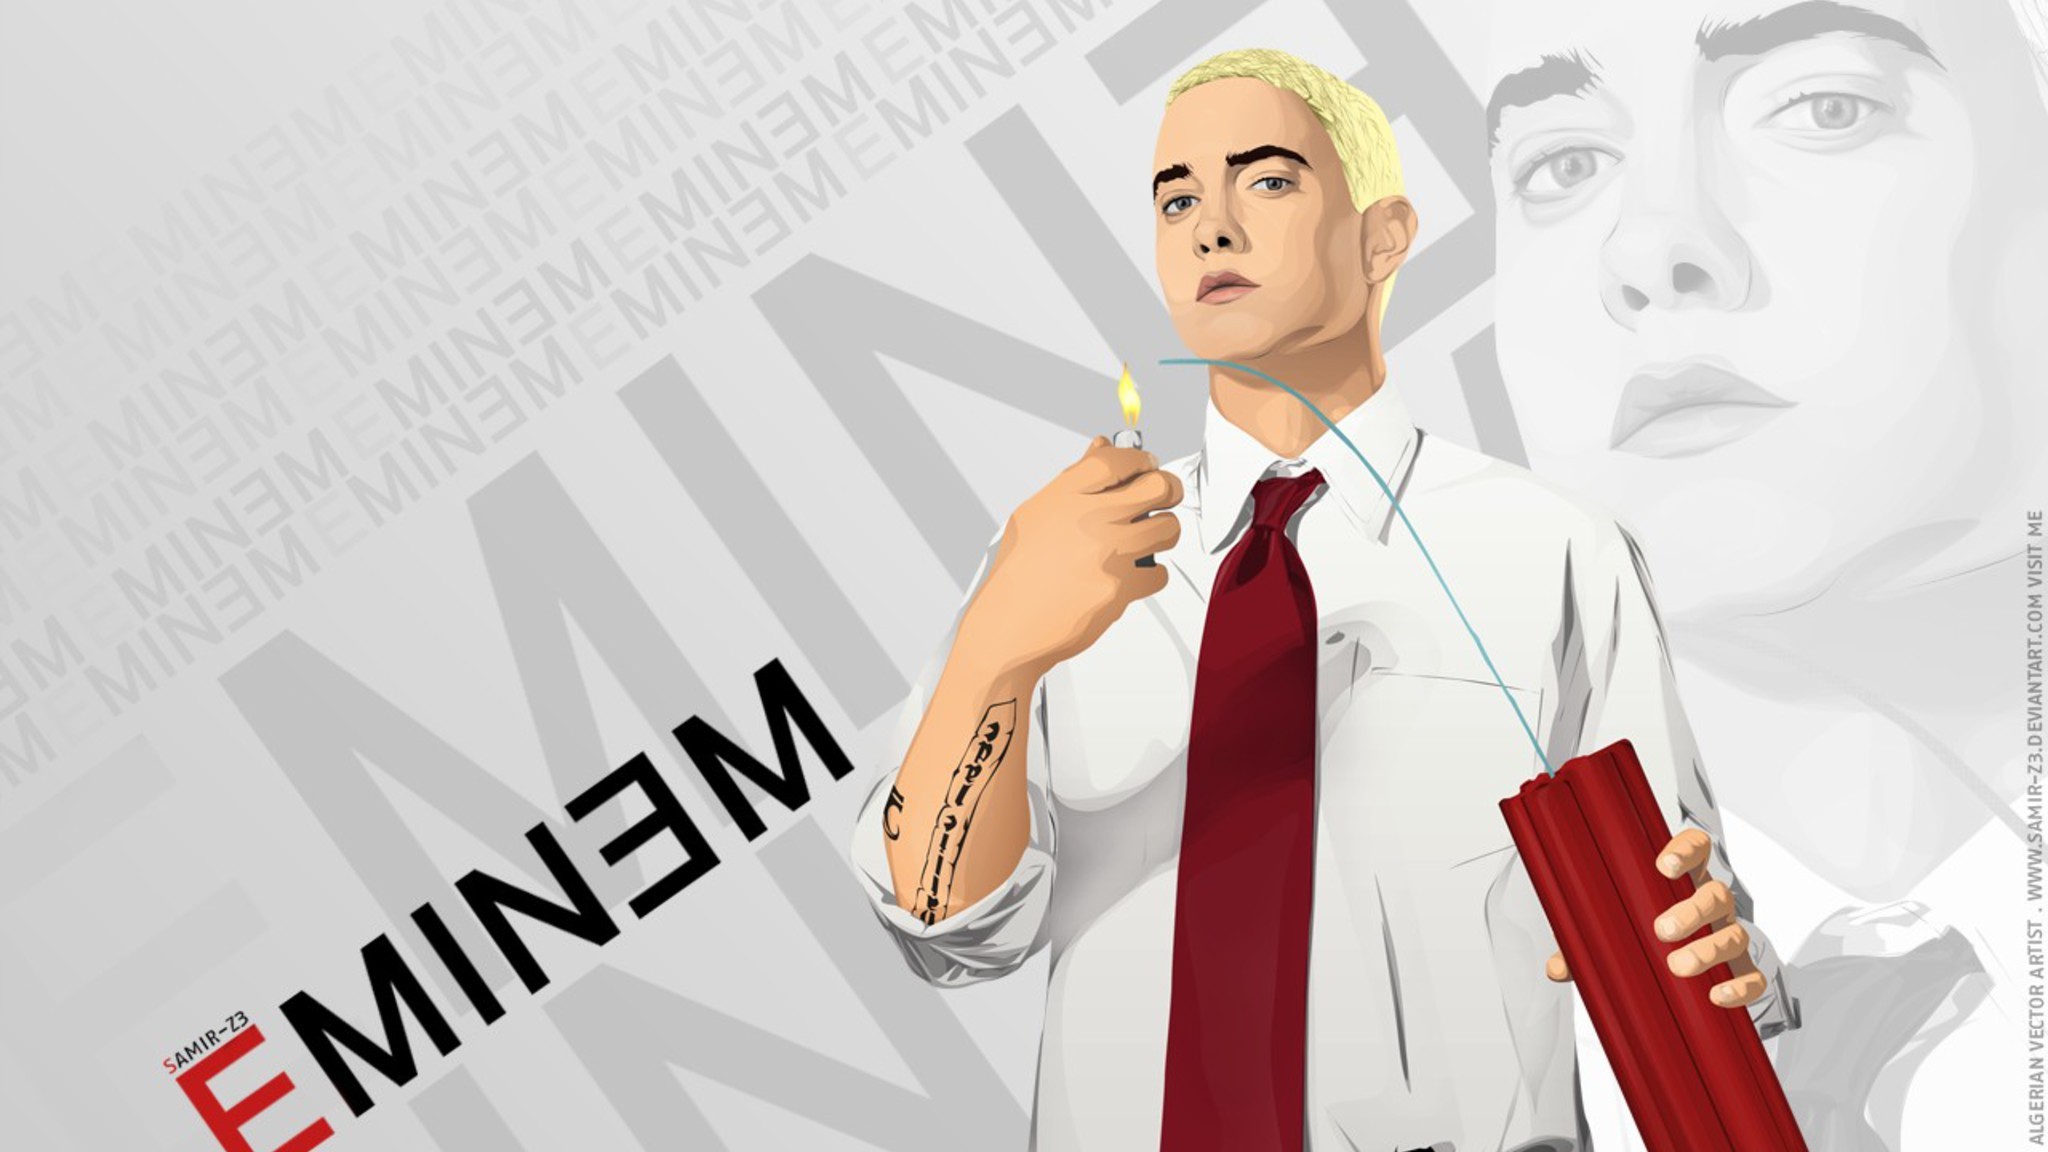 Wallpaper Eminem, Illustration, Job, Graphic Design, Television, Background  - Download Free Image